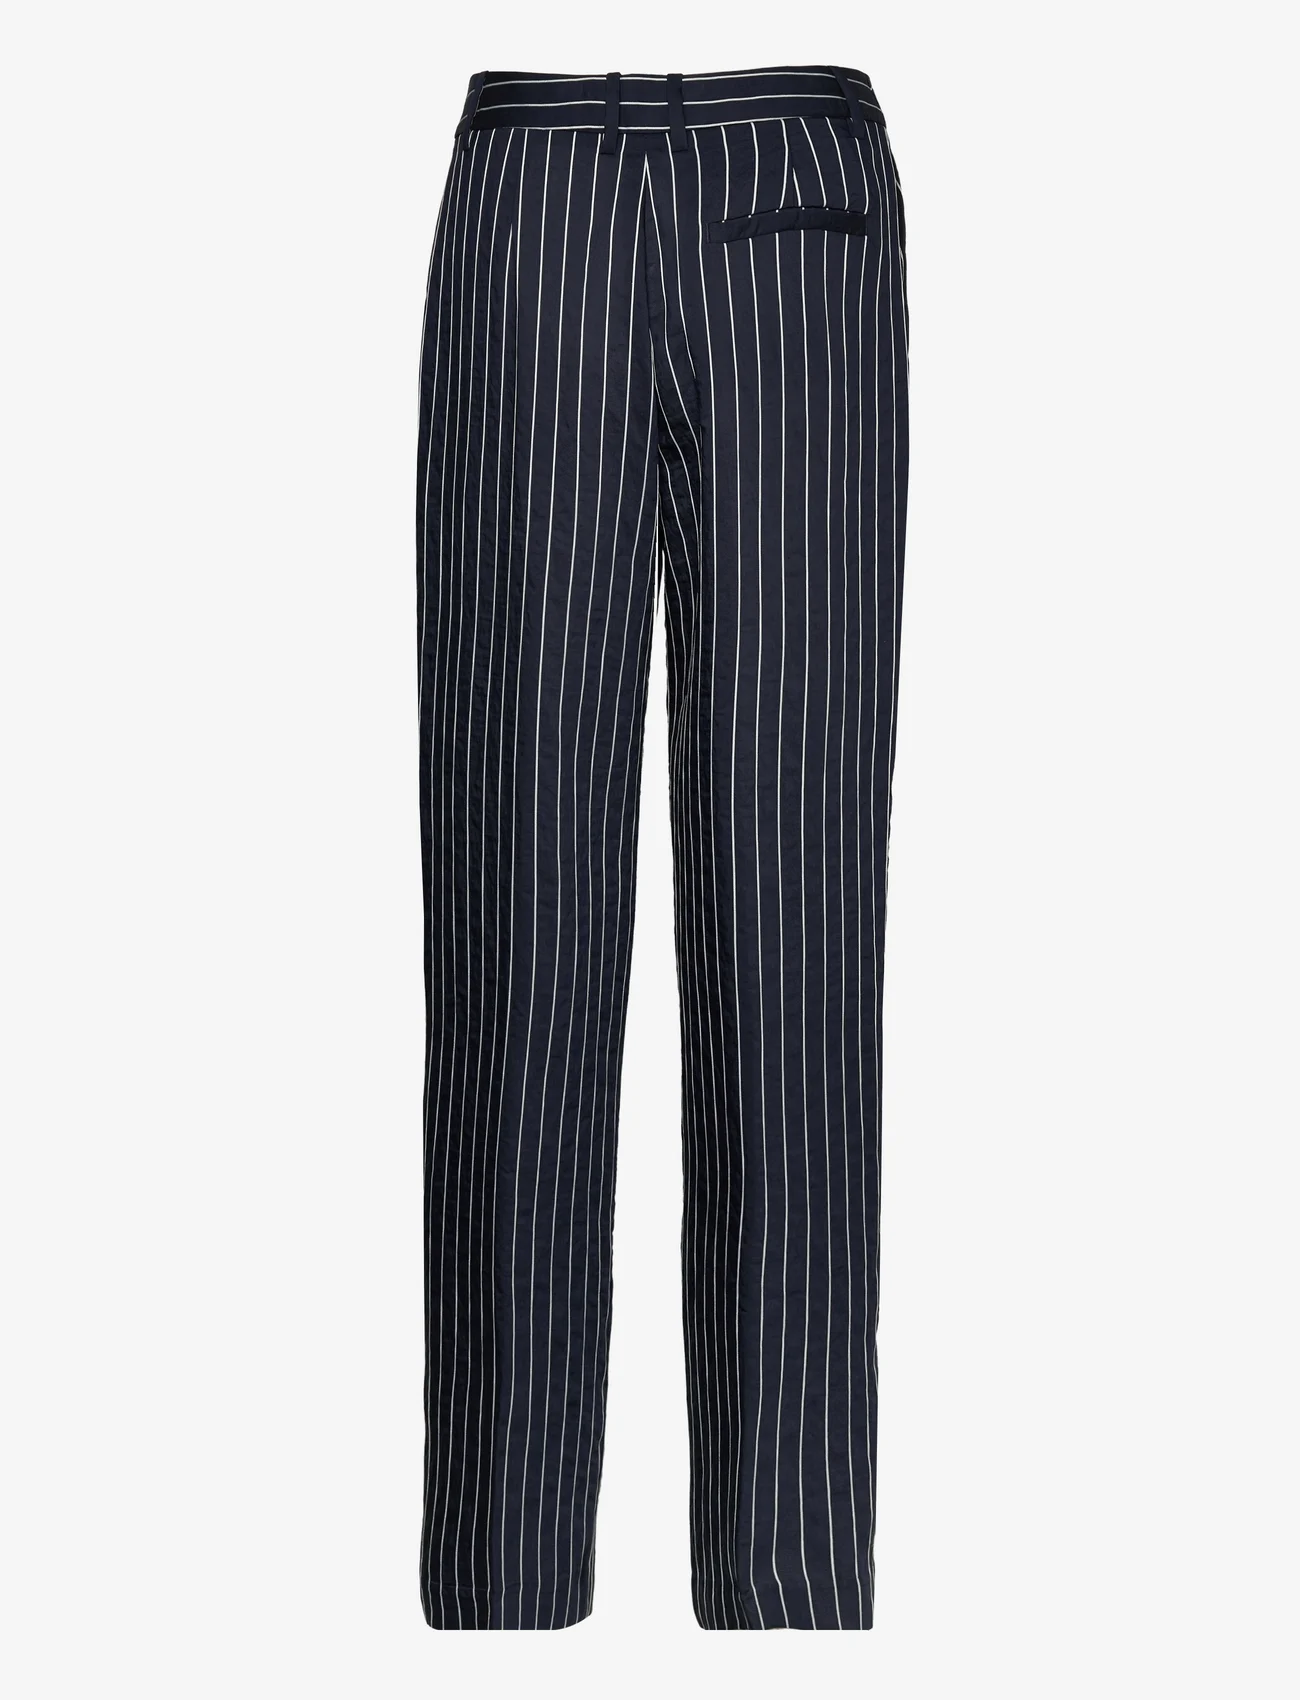 Samsøe Samsøe - Agneta trousers 14907 - tailored trousers - salute st - 1